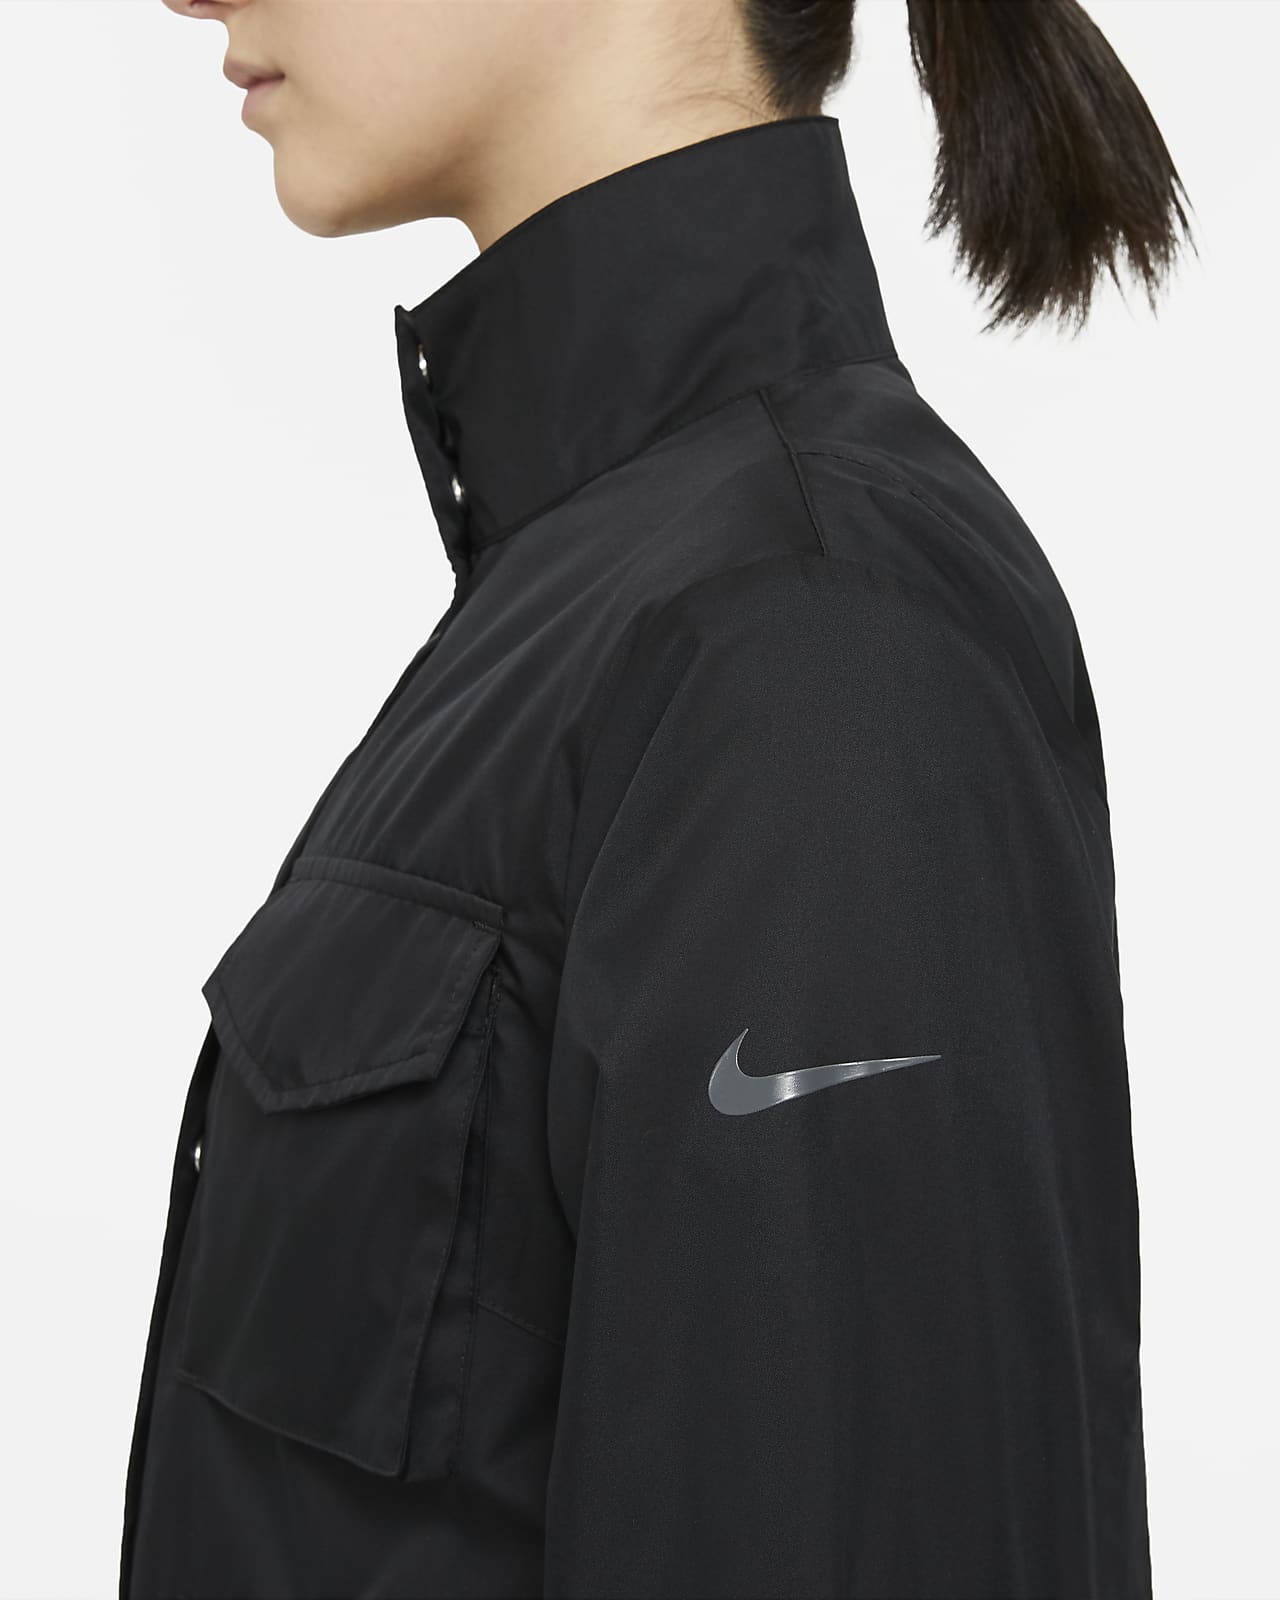 Nike公式 ナイキ スポーツウェア ウィメンズ ウーブン ジャケット オンラインストア 通販サイト